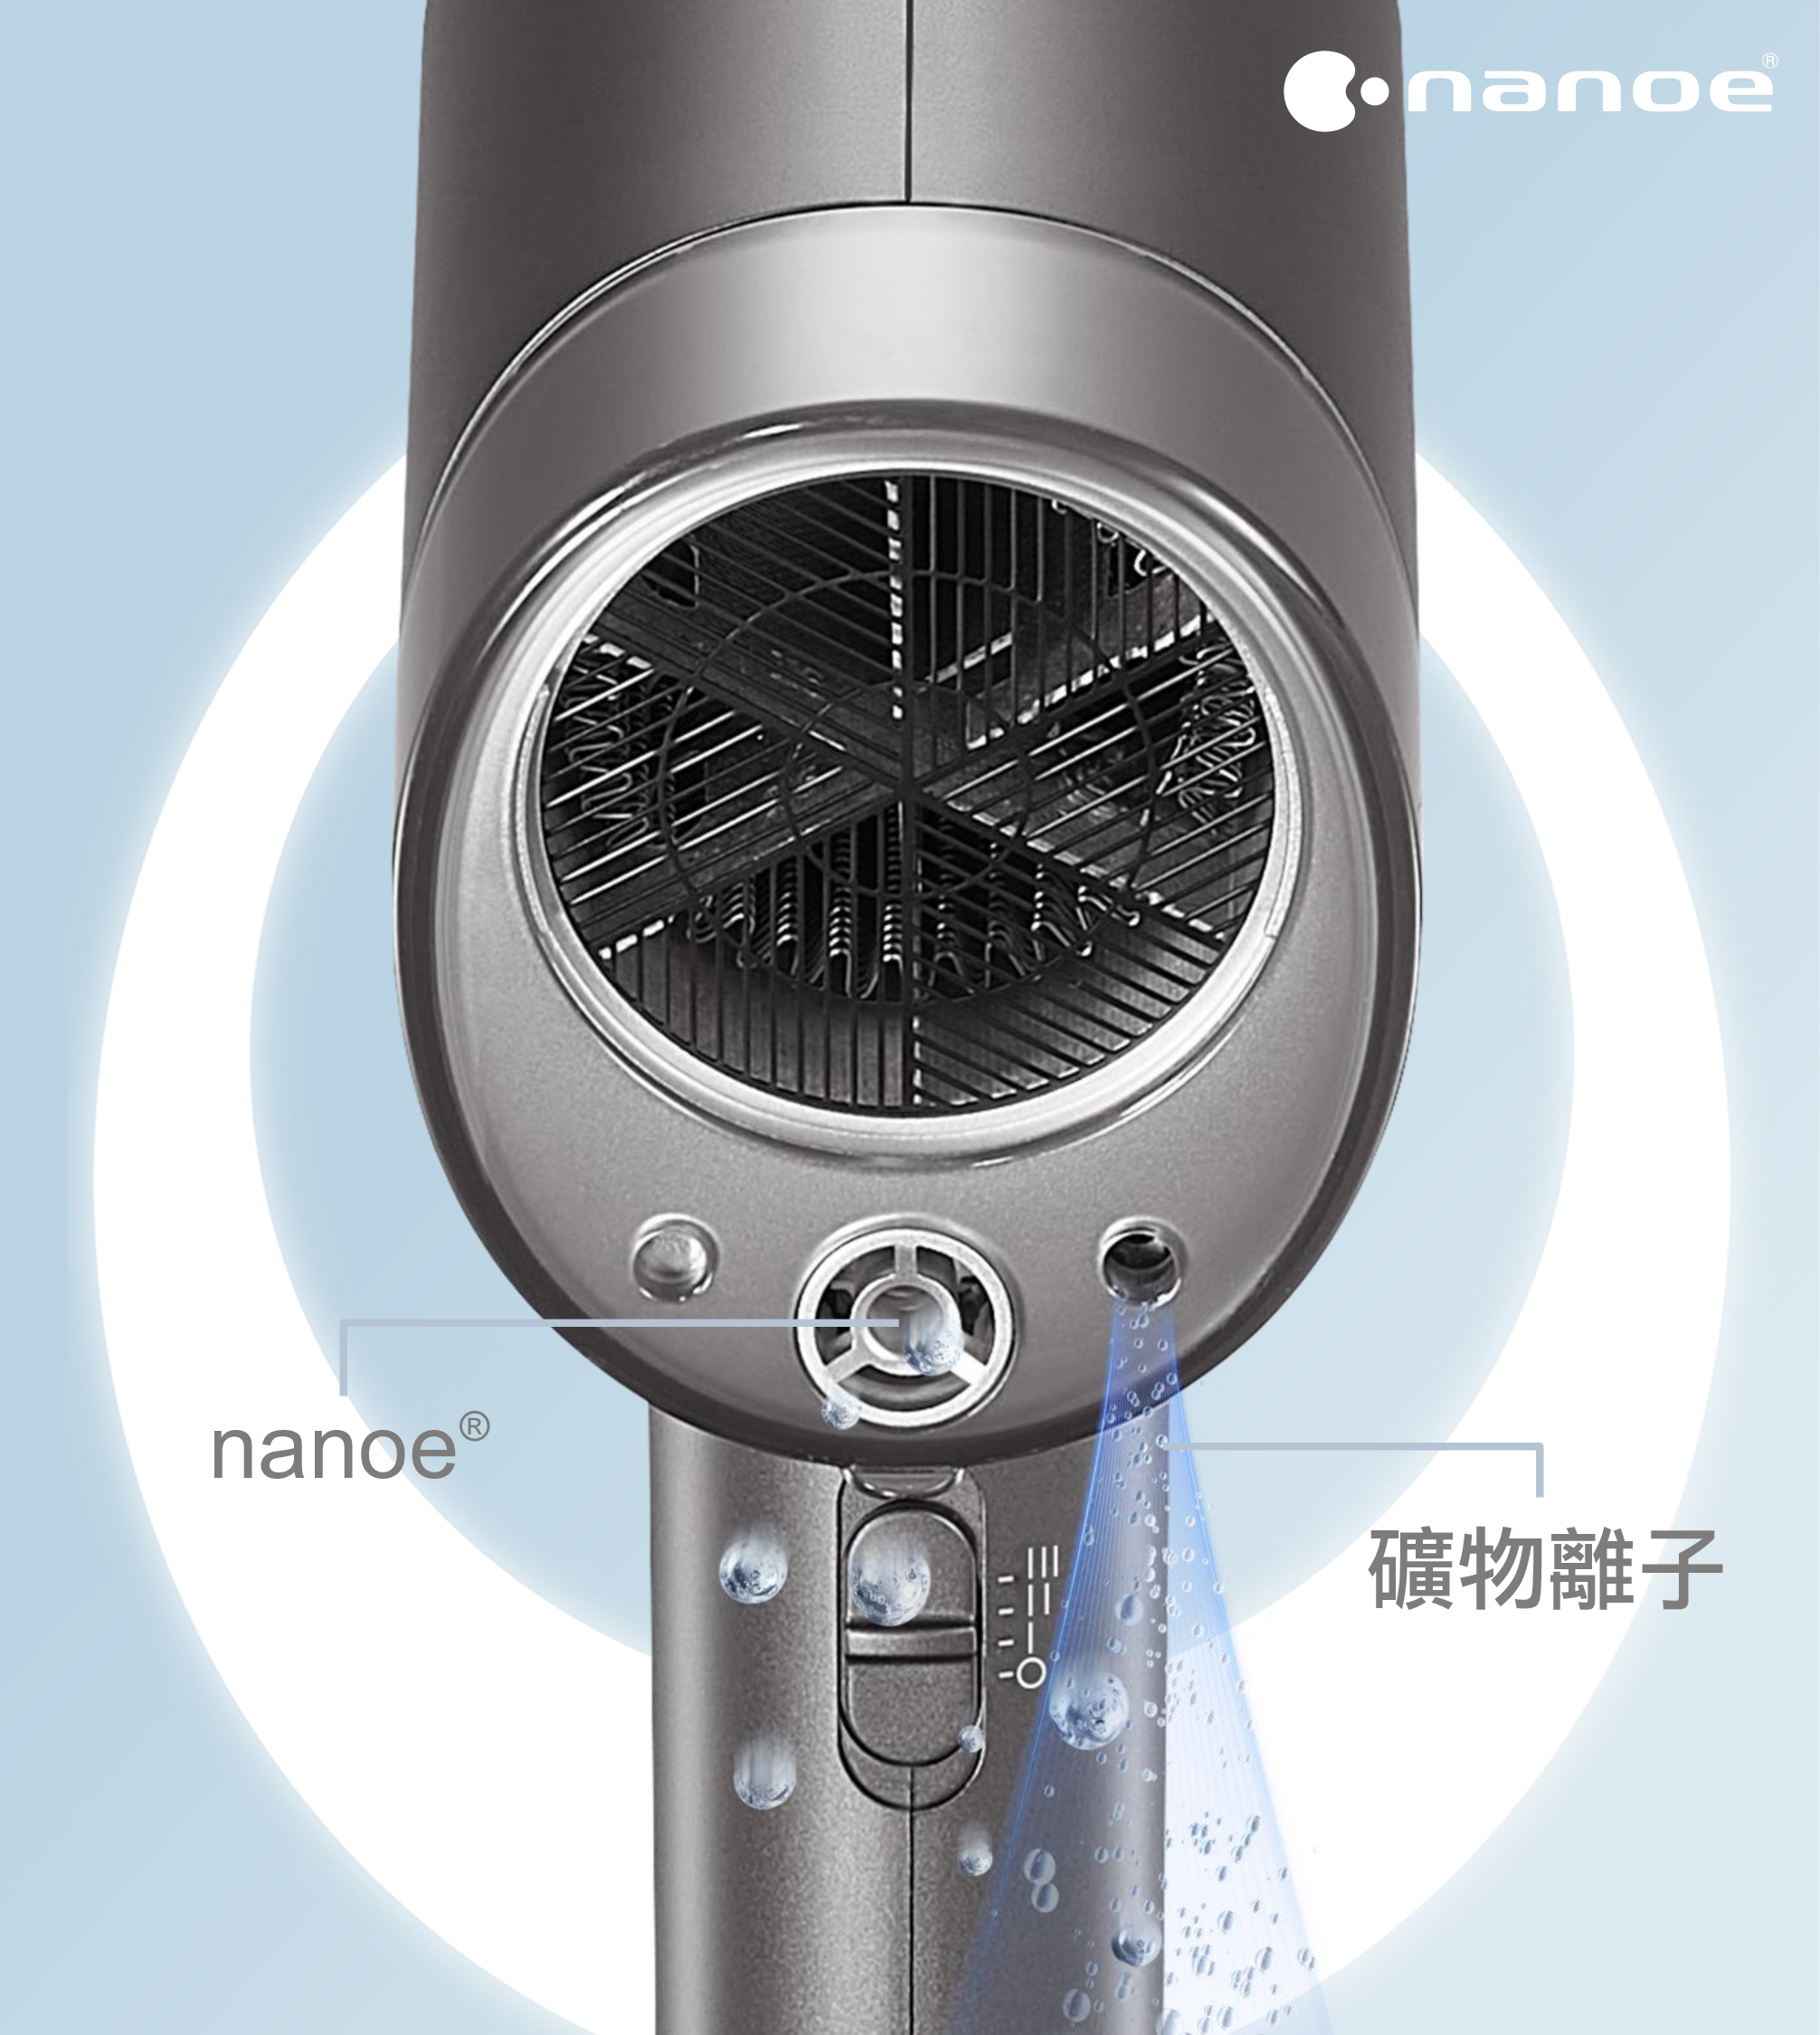 男士大熱之選！Panasonic nanoe®護髮風筒打造能抵禦紫外線傷害的強韌秀髮